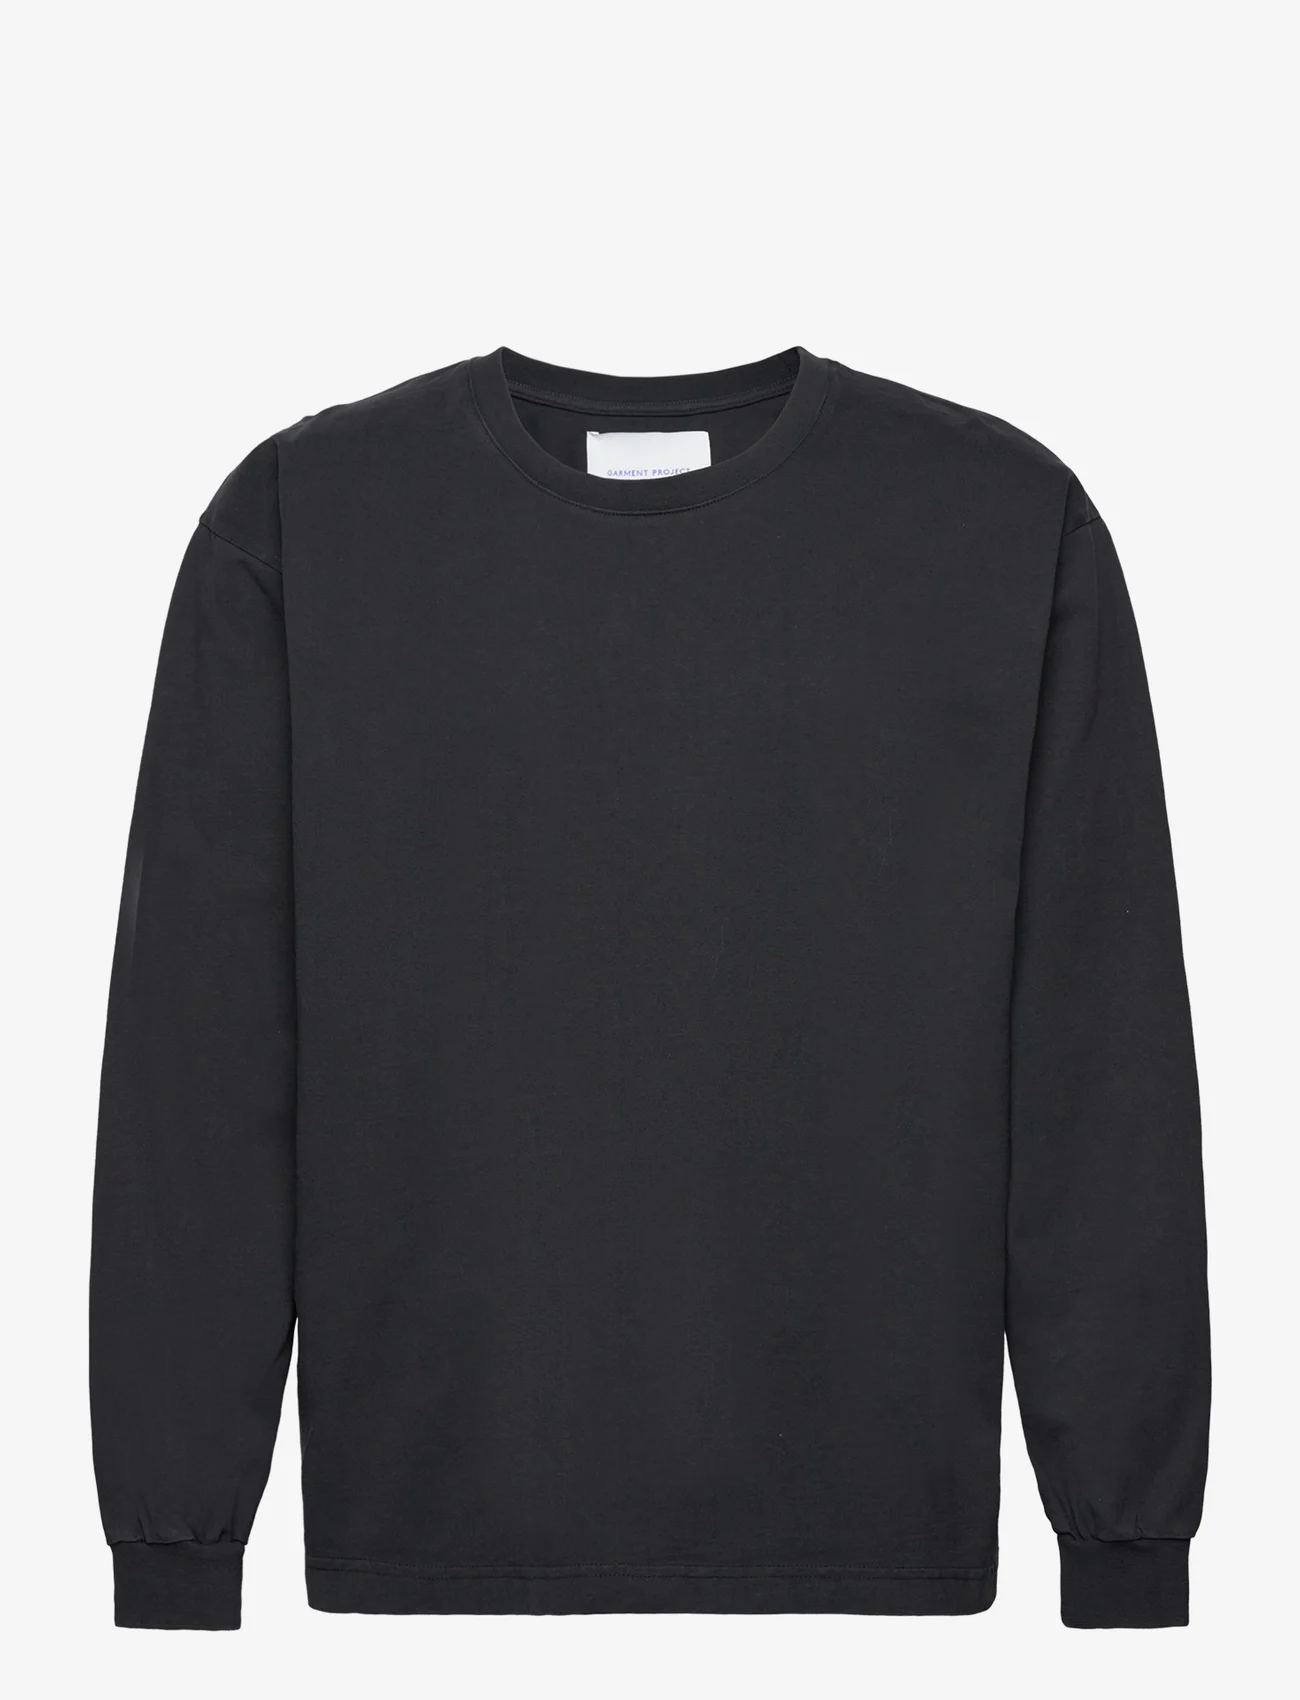 Garment Project - Heavy L/S Tee - Black - t-shirts - black - 0